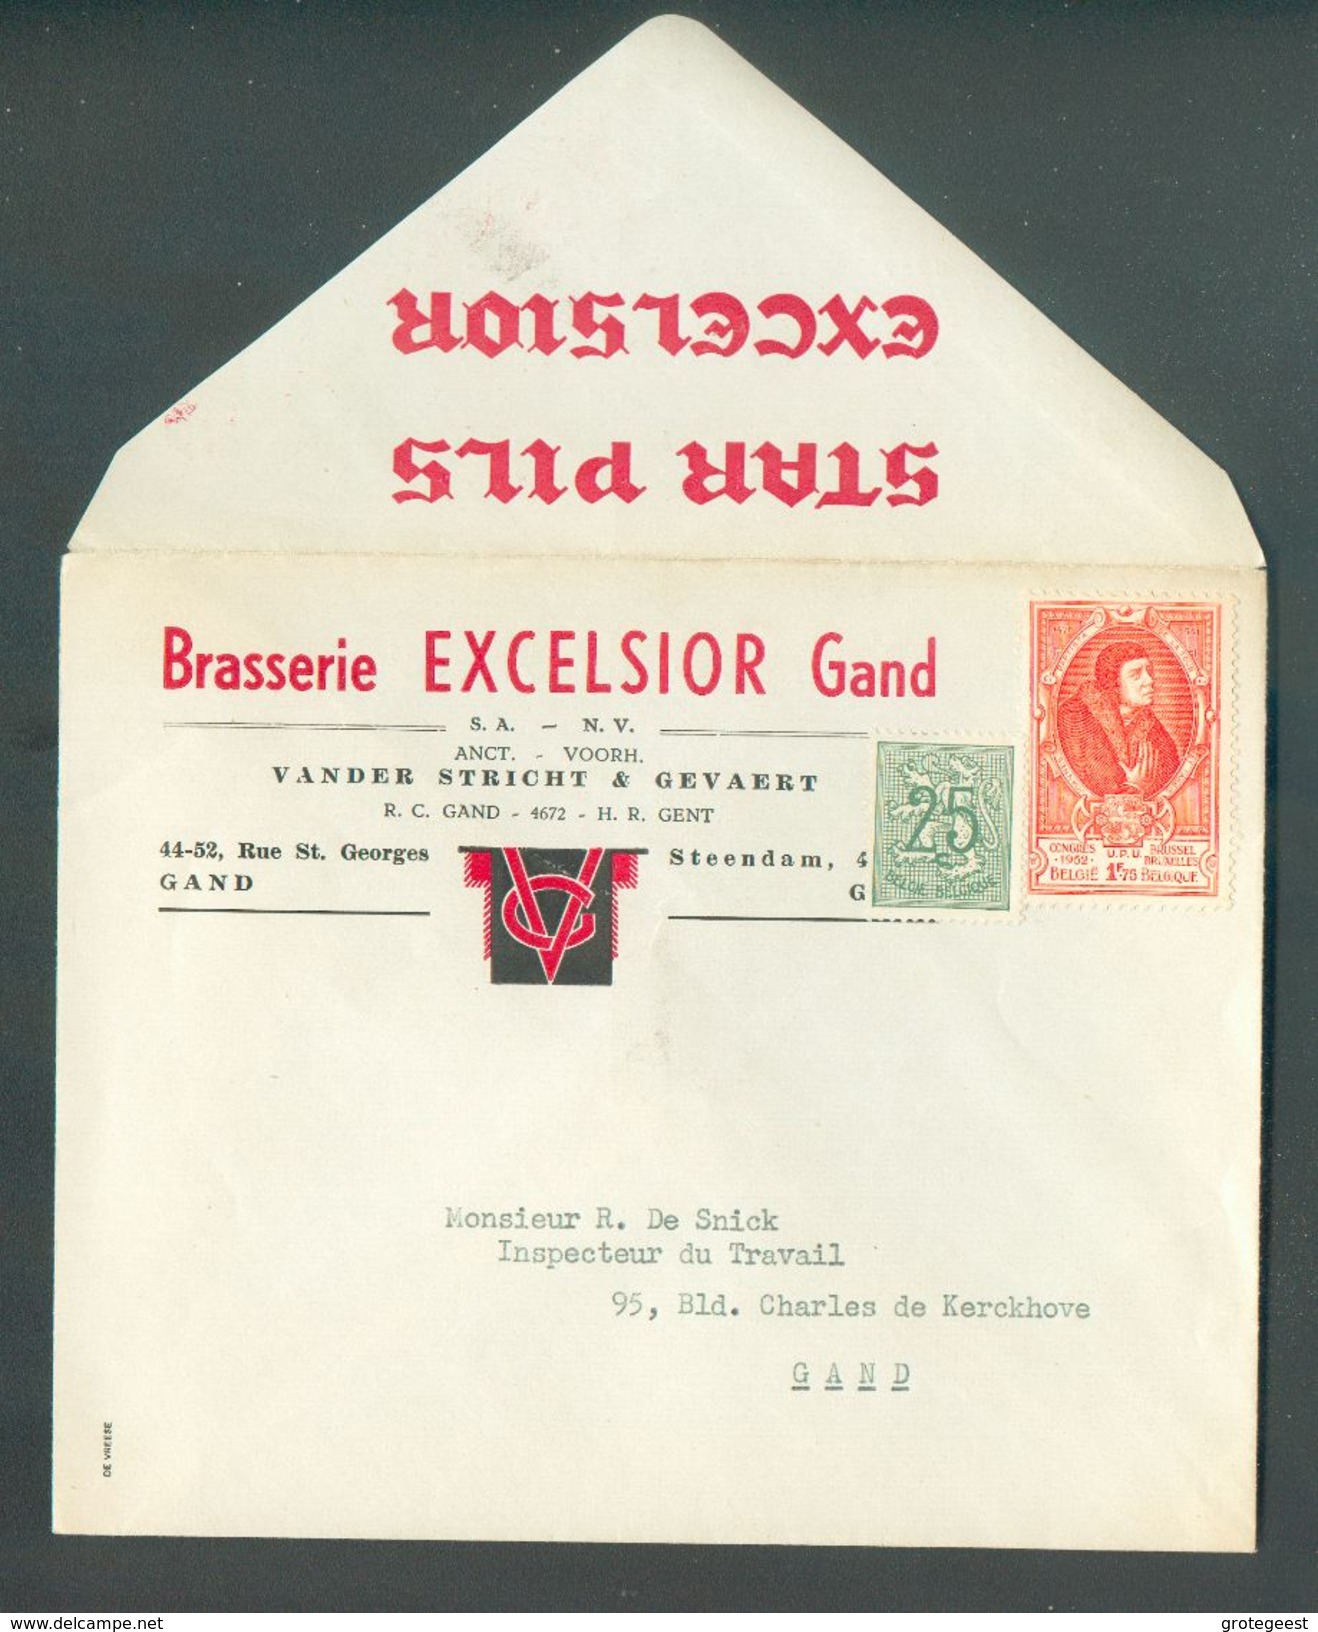 BELGIQUE Enveloppe En Tête BRASERIE EXCELSSIOR GAND (affr.UPU) Fond. Vander Stricht & Gevaert - 12171 - Beers